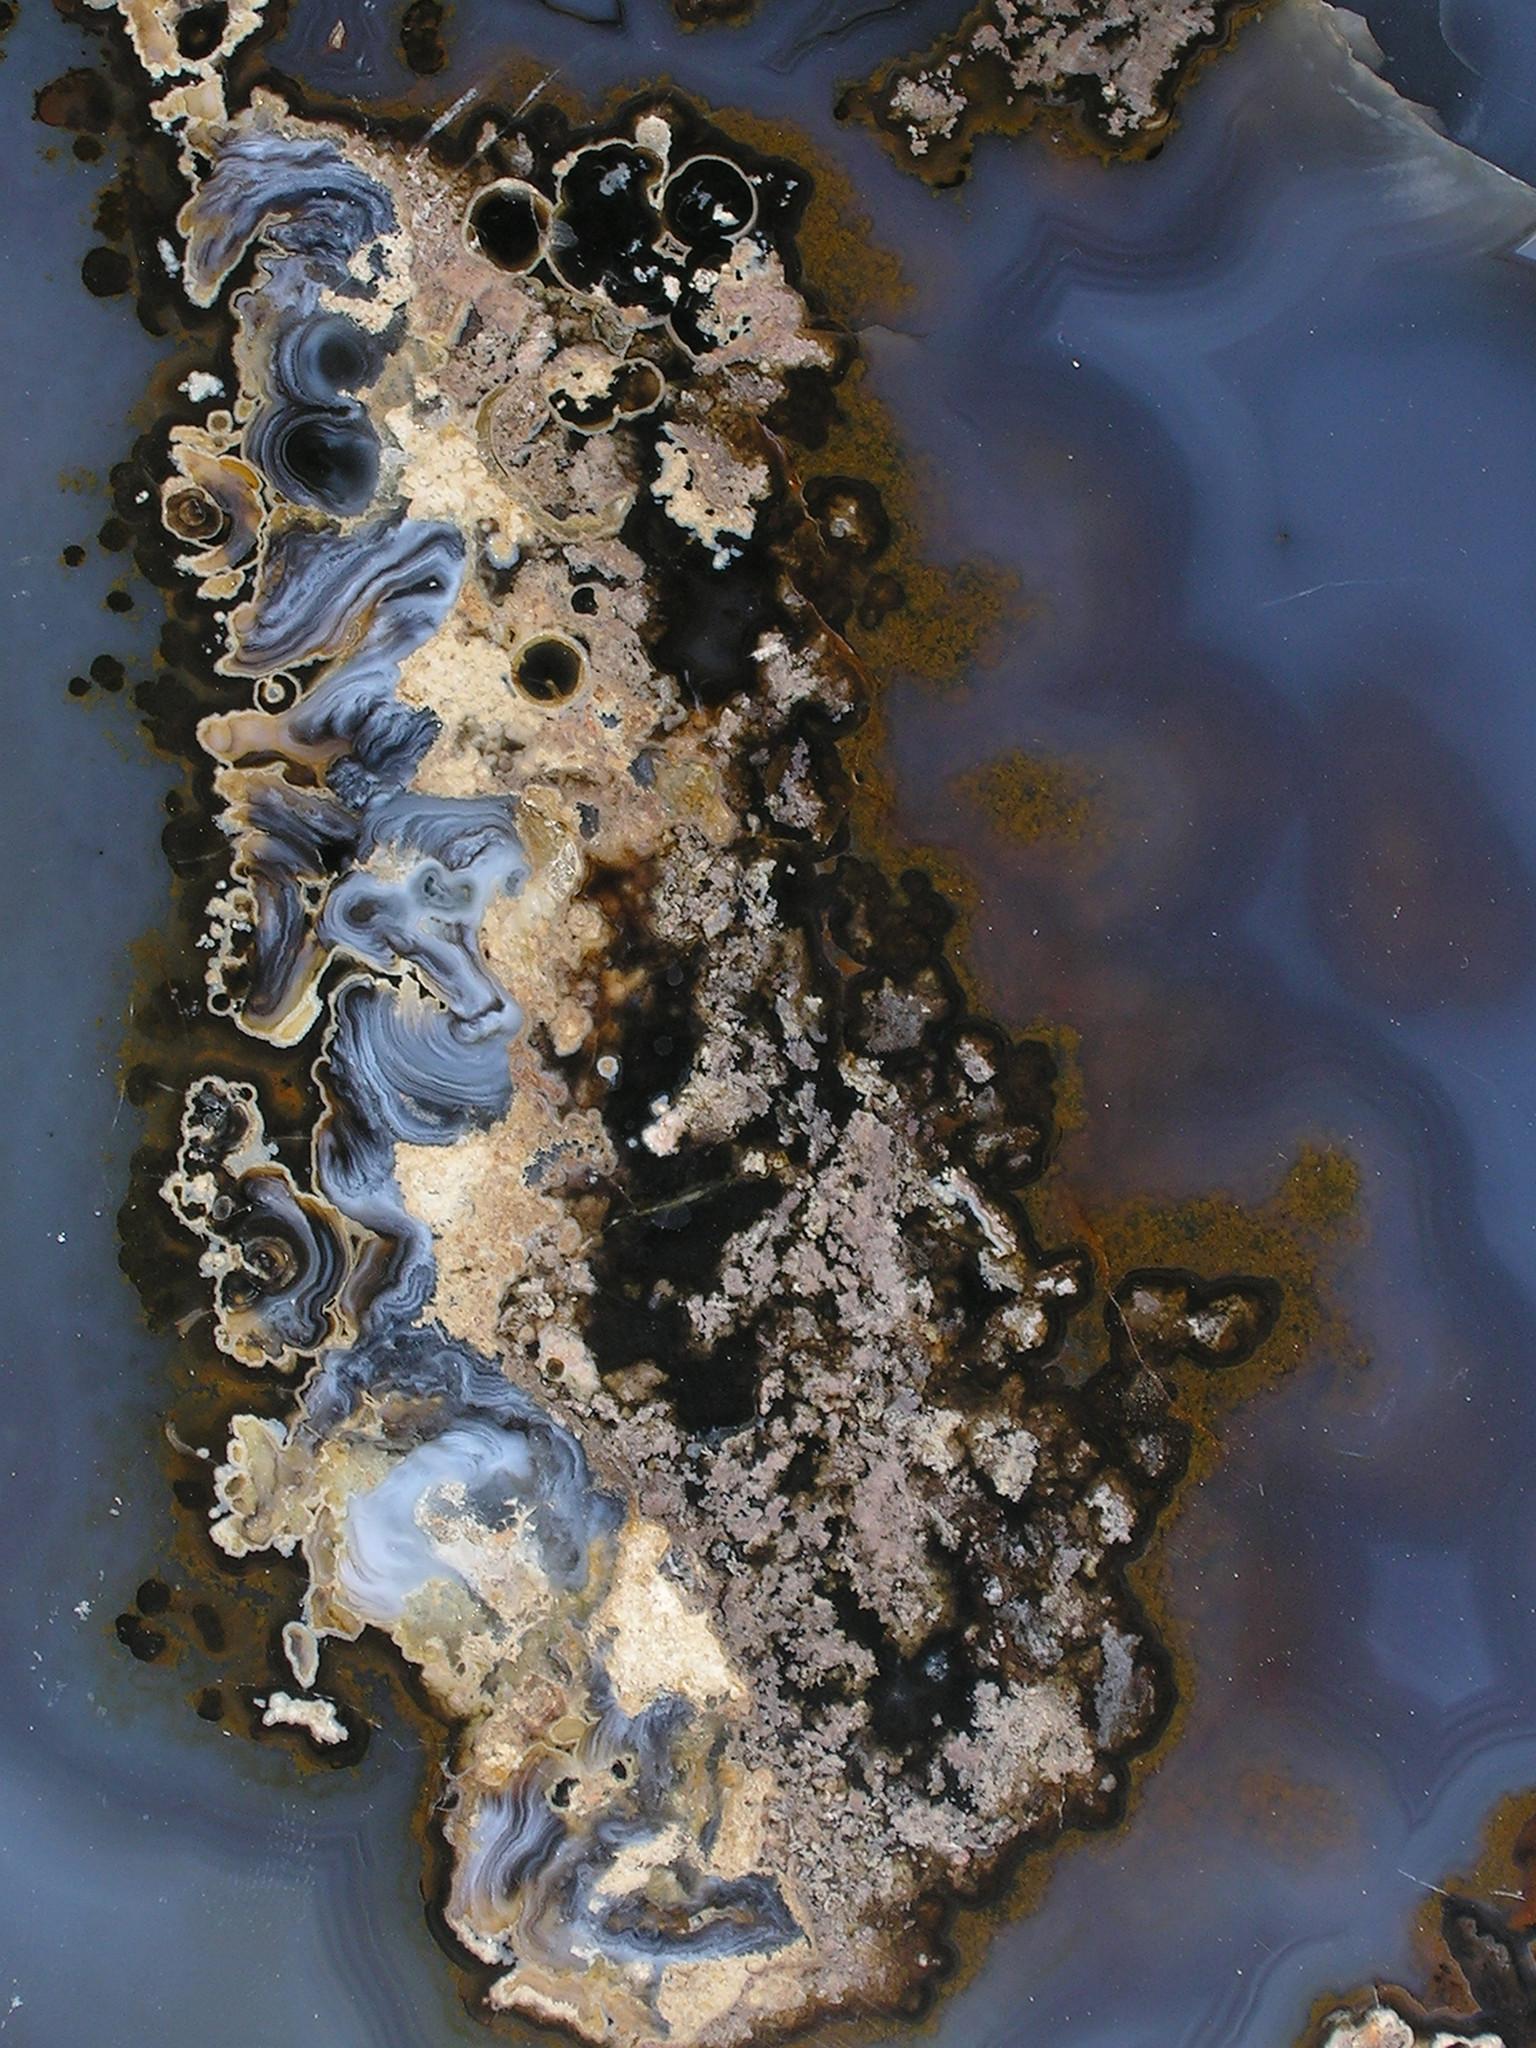 Grande plaque d'agate bleue montée sur un support.

L'agate se caractérise par la finesse de son grain et l'éclat de sa couleur. Ces dalles sont classiquement associées à des roches volcaniques ou à des laves anciennes. Historiquement, l'agate est